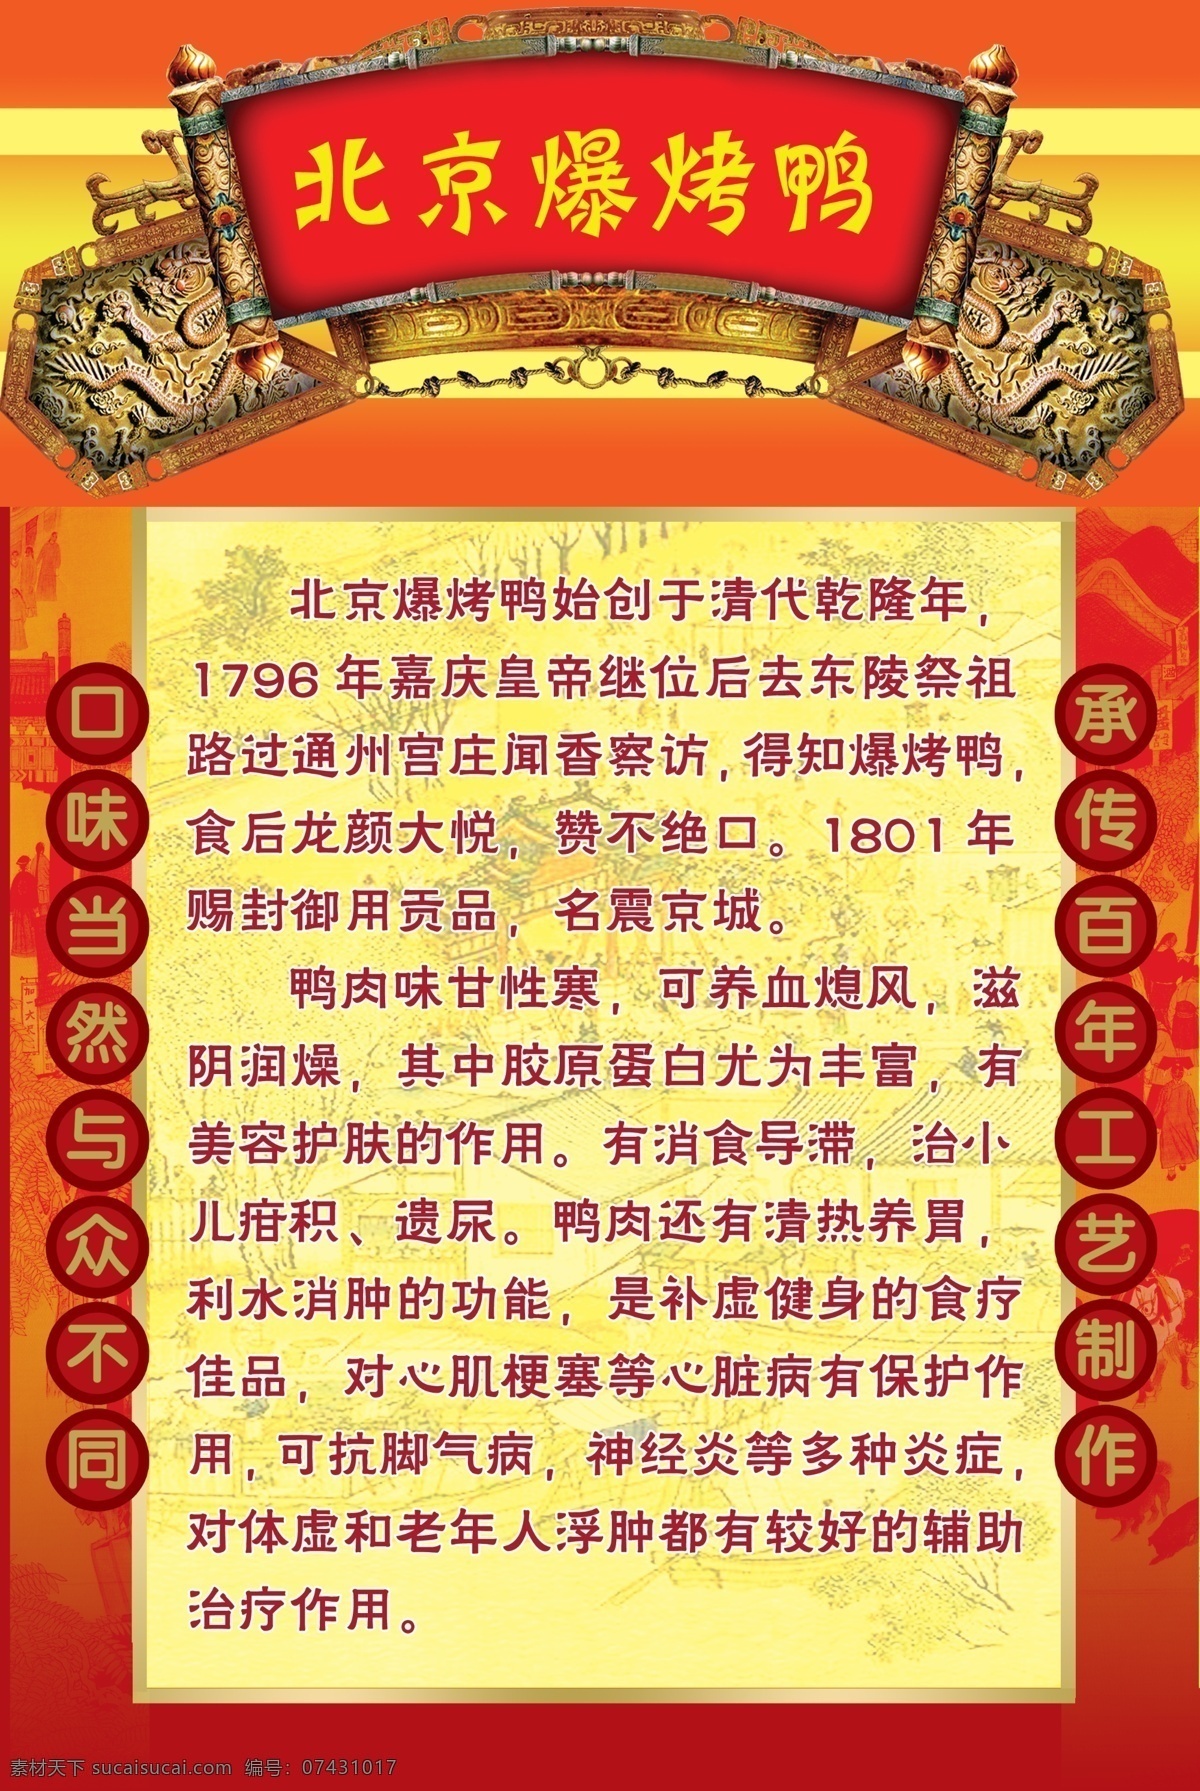 北京 爆 烤鸭 海报 花纹 清明上河图 古典龙牌匾 介绍 广告设计模板 源文件